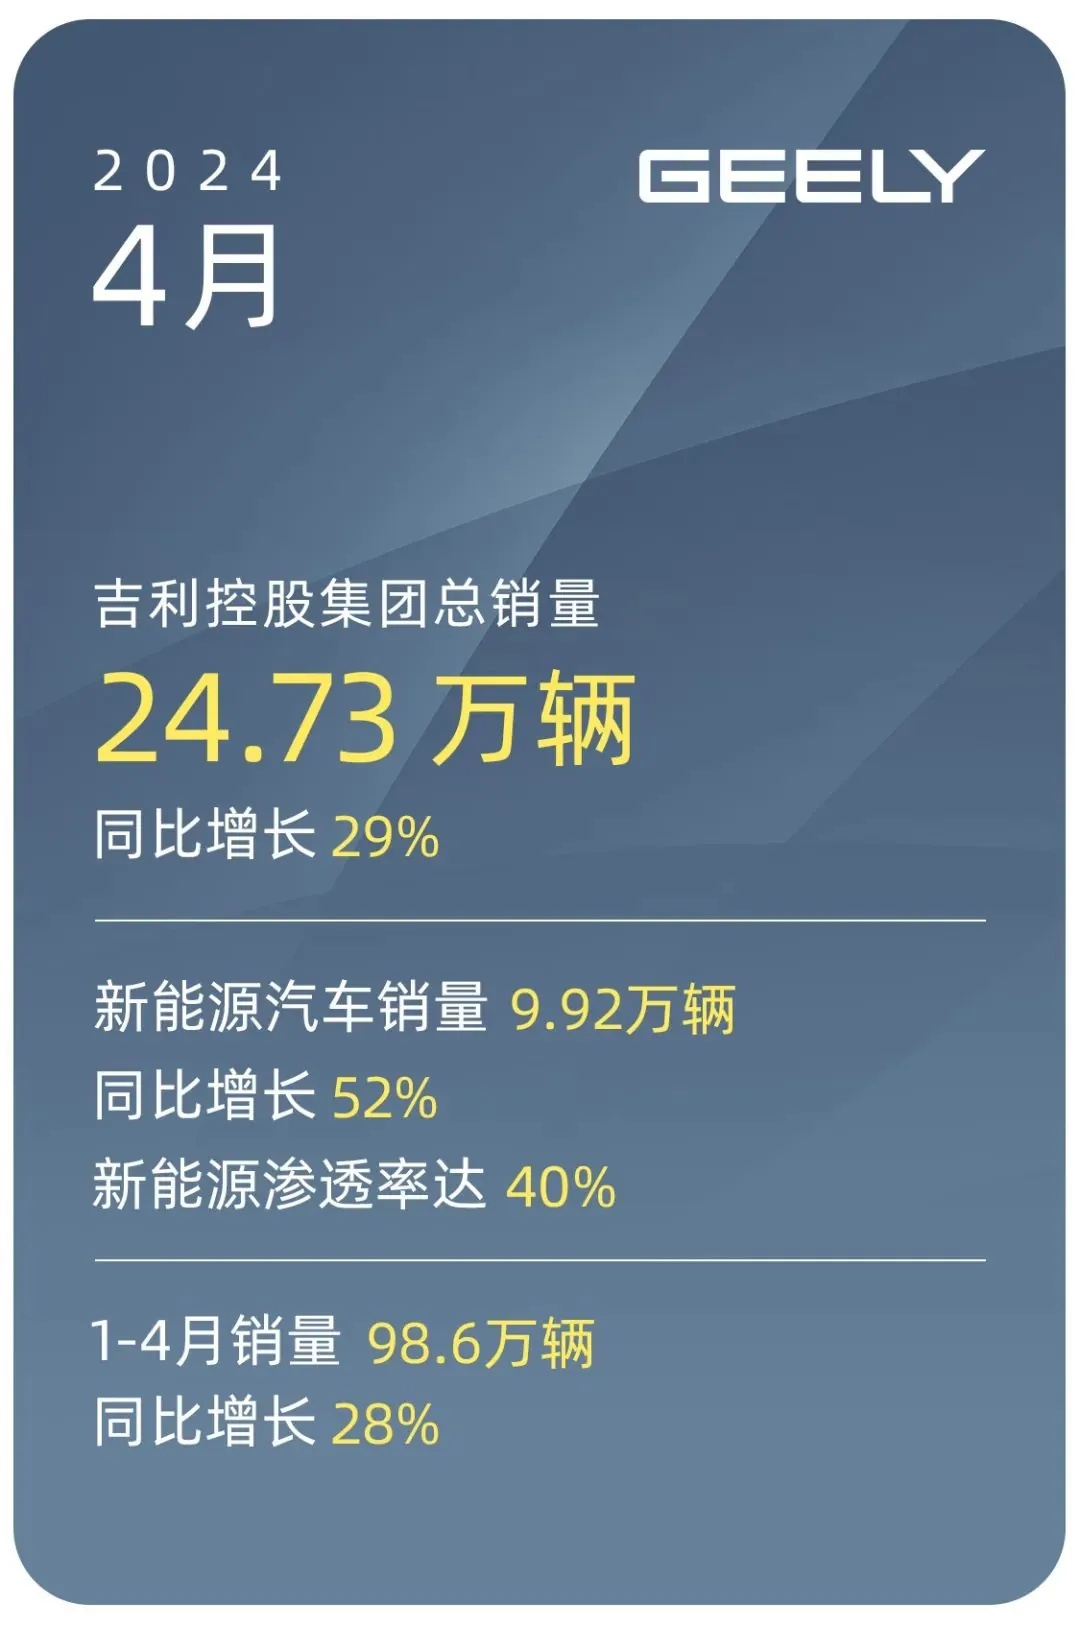 吉利控股集团 4 月汽车销量 24.73 万辆：同比增长 29%